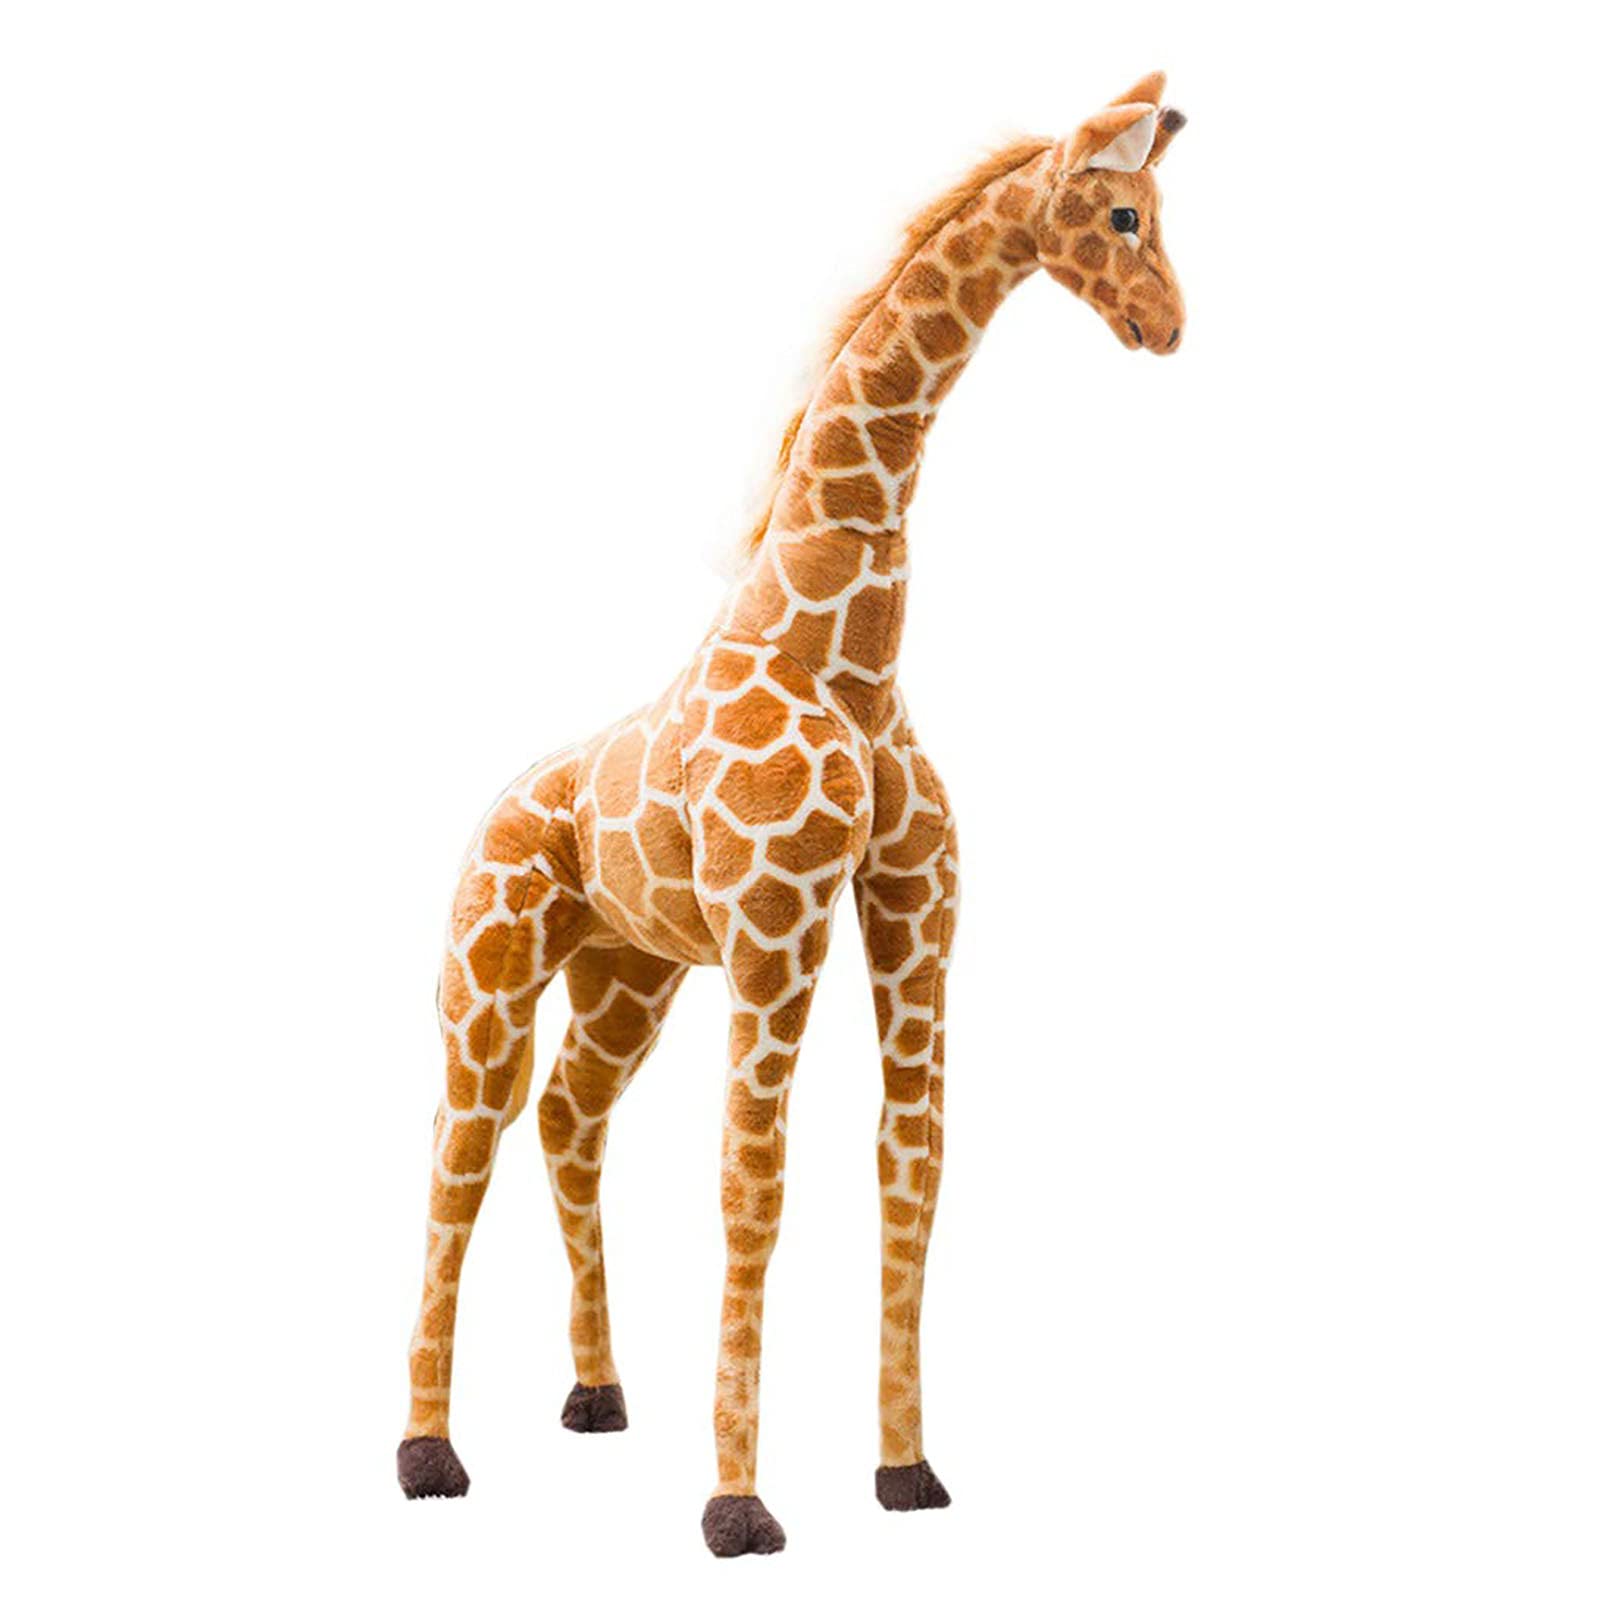 Hengqiyuan Nettes Plüschspielzeug-Plüsch für Kinder, große Giraffen-kuschelige Spielzeug, Ultra-weiche Giraffe-Plüsch mit flexiblen Beinen zum Sitzen und Stehen, 80cm